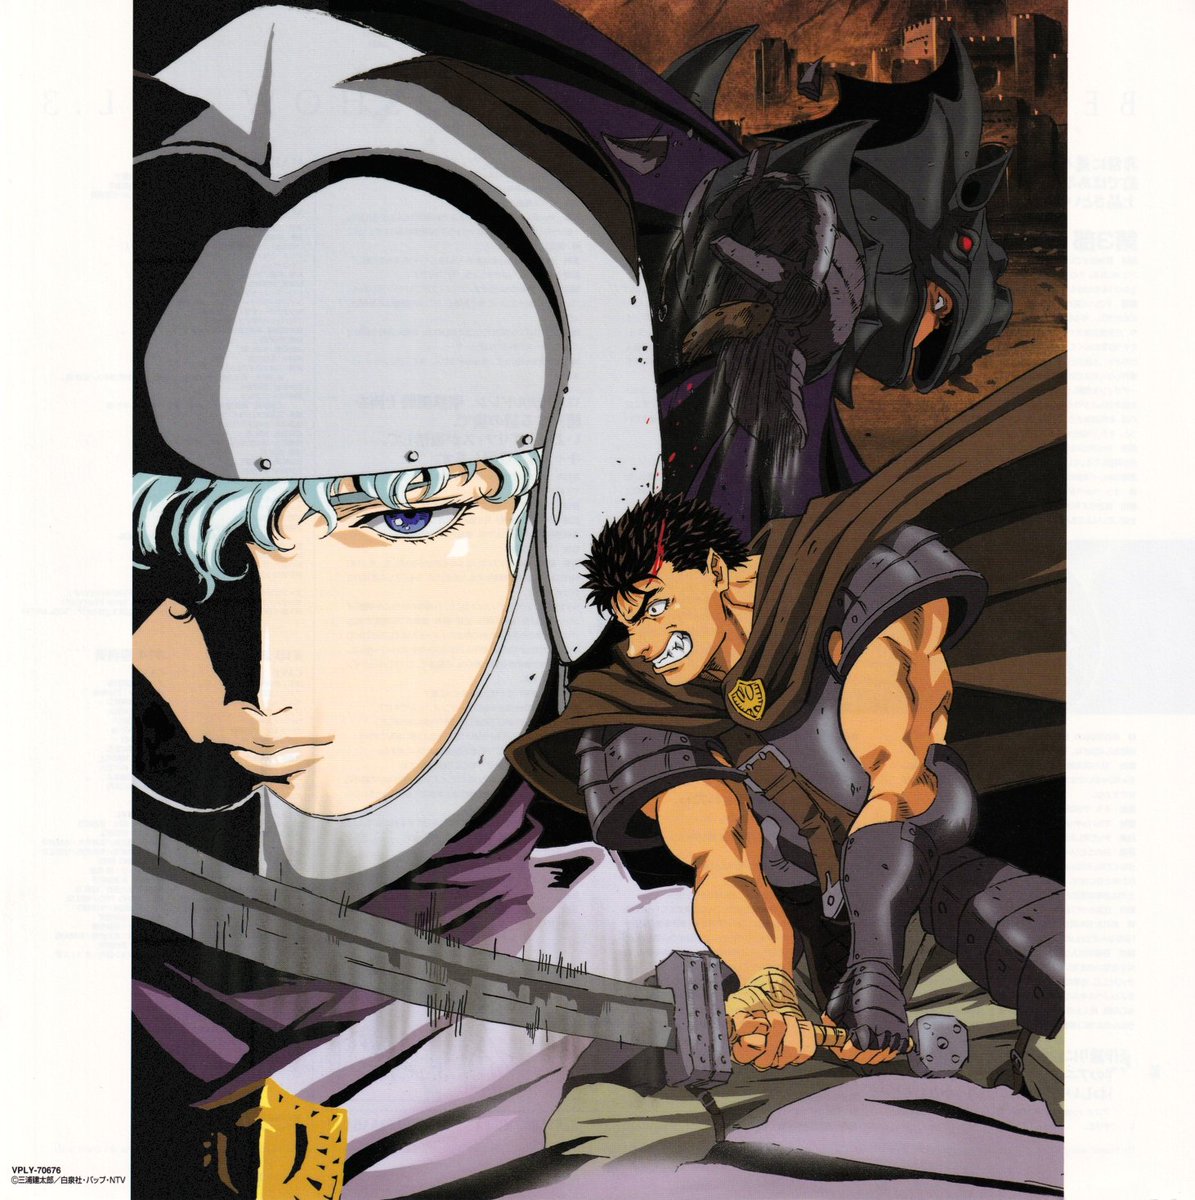 Kentaro Miura Art ⚔ on X: 1997 Anime - Ep. 1, stitch 25 + Cel   / X